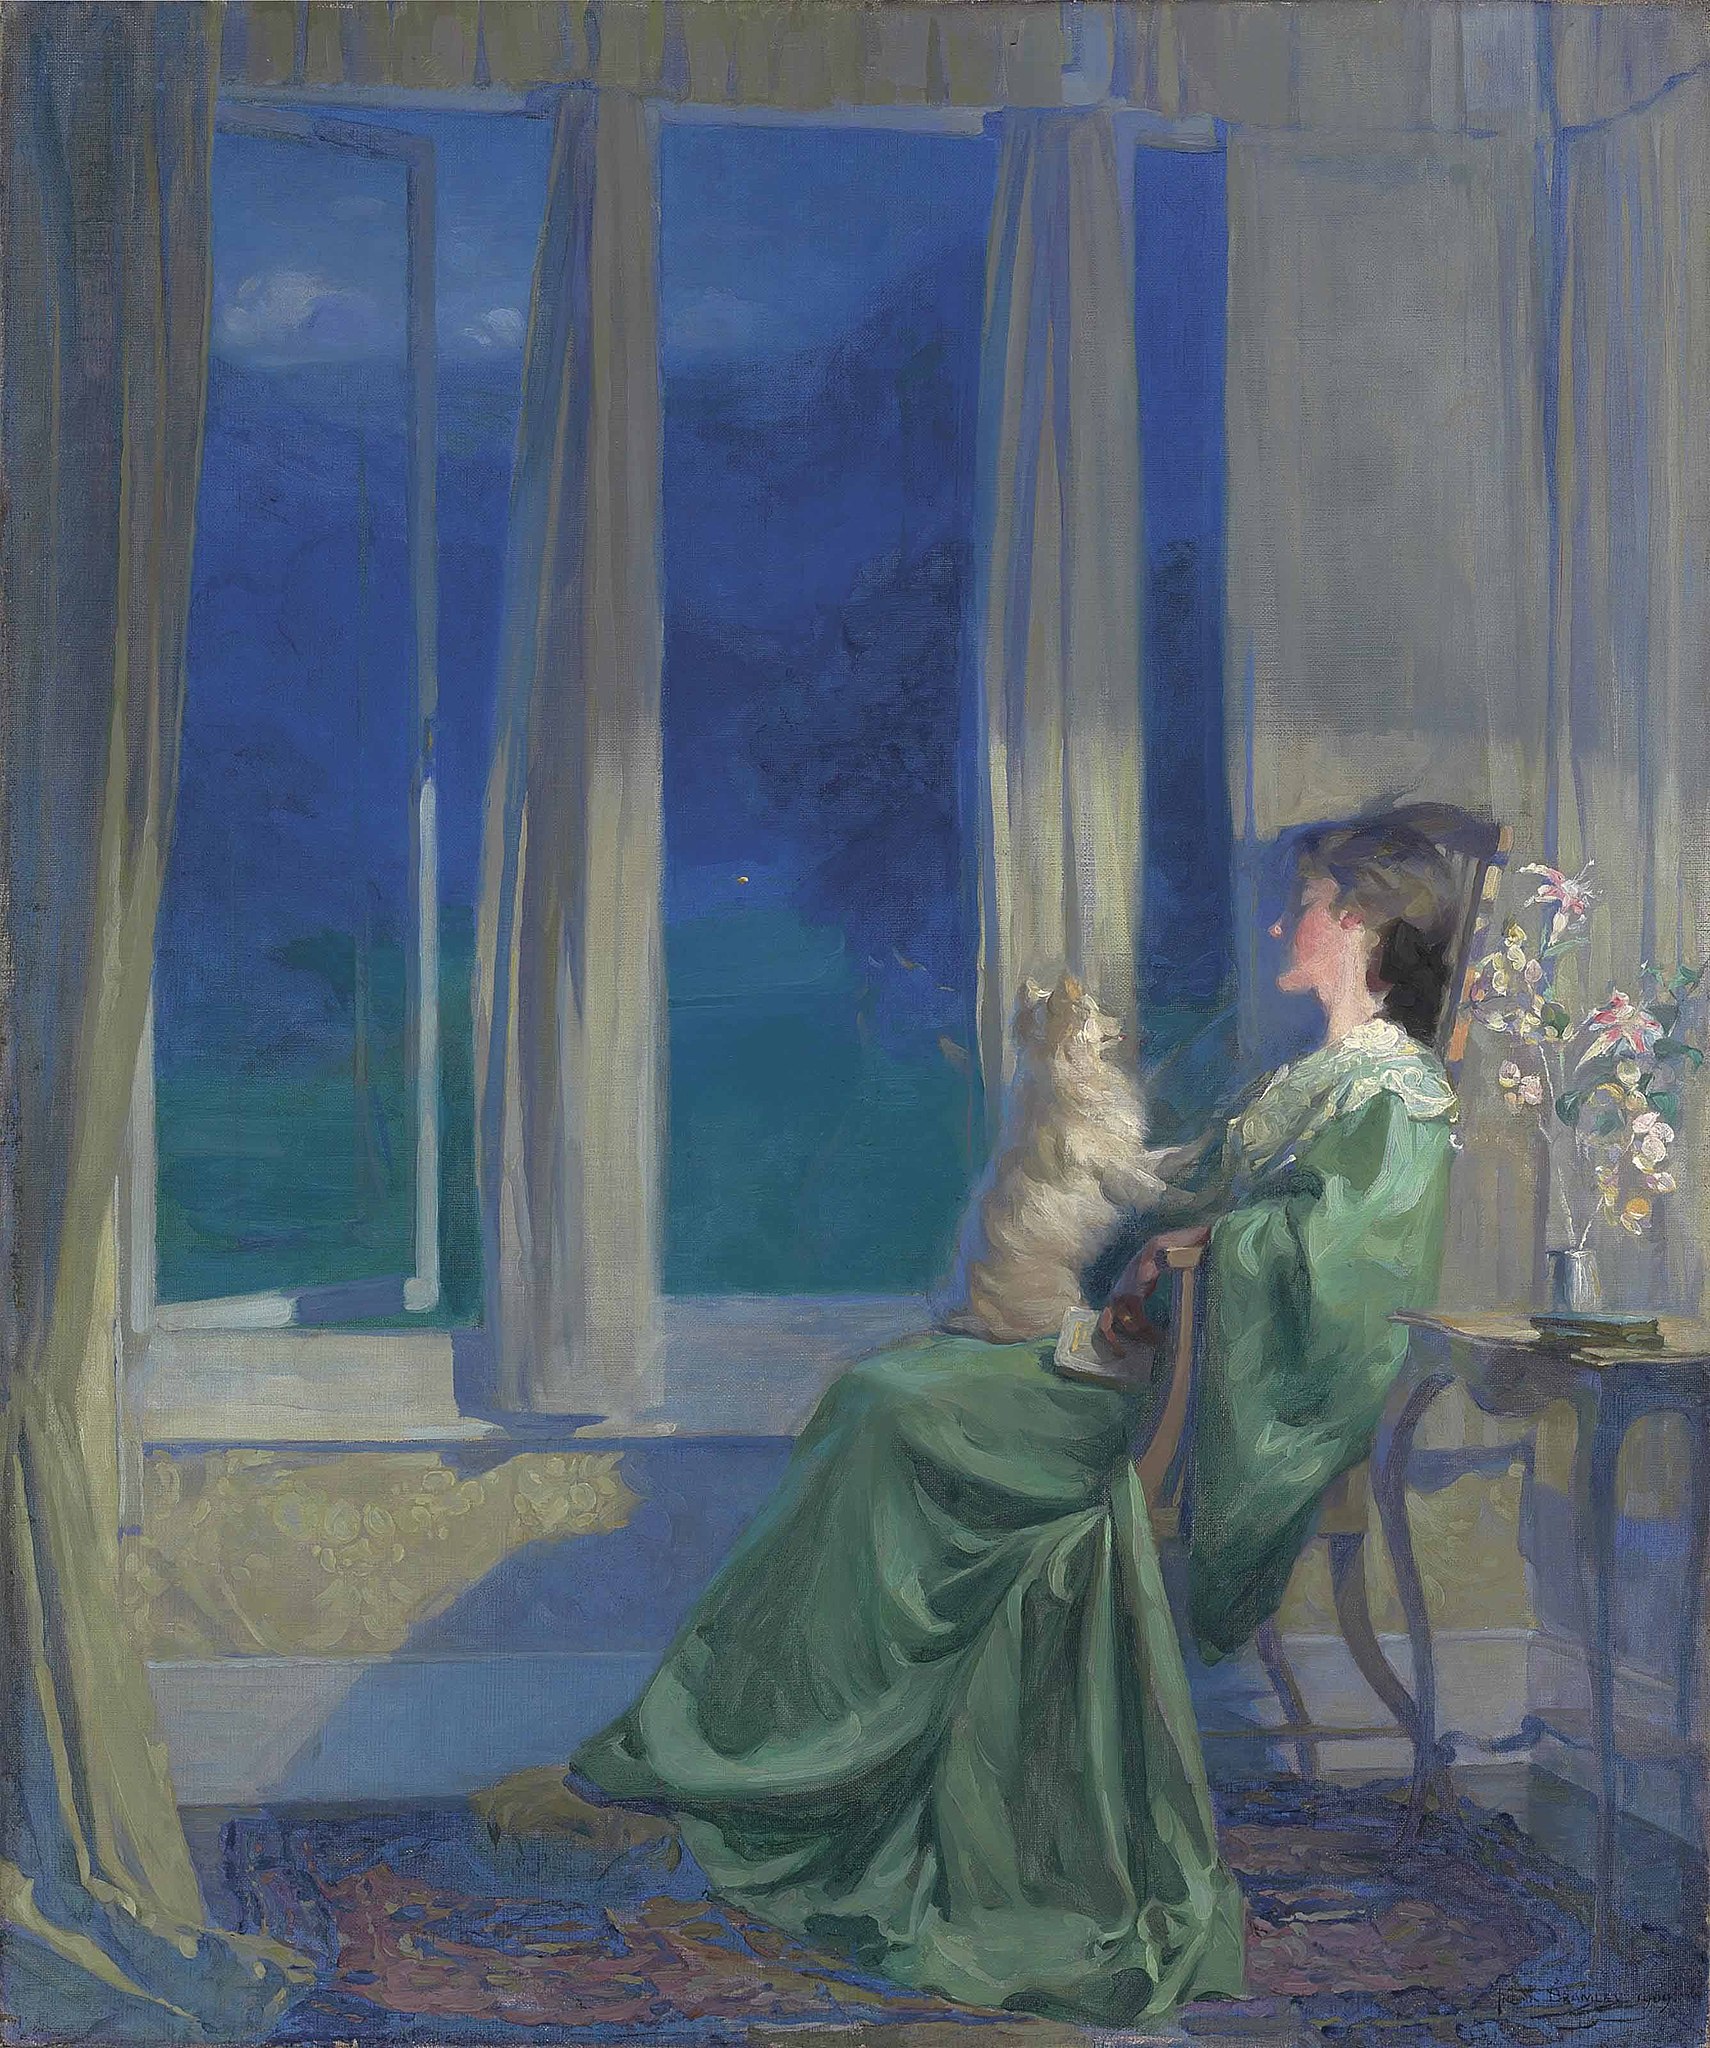 Wenn der blaue Abend langsam hereinbricht by Frank Bramley - 1909 - 90,8 x 76,8 cm Private Sammlung